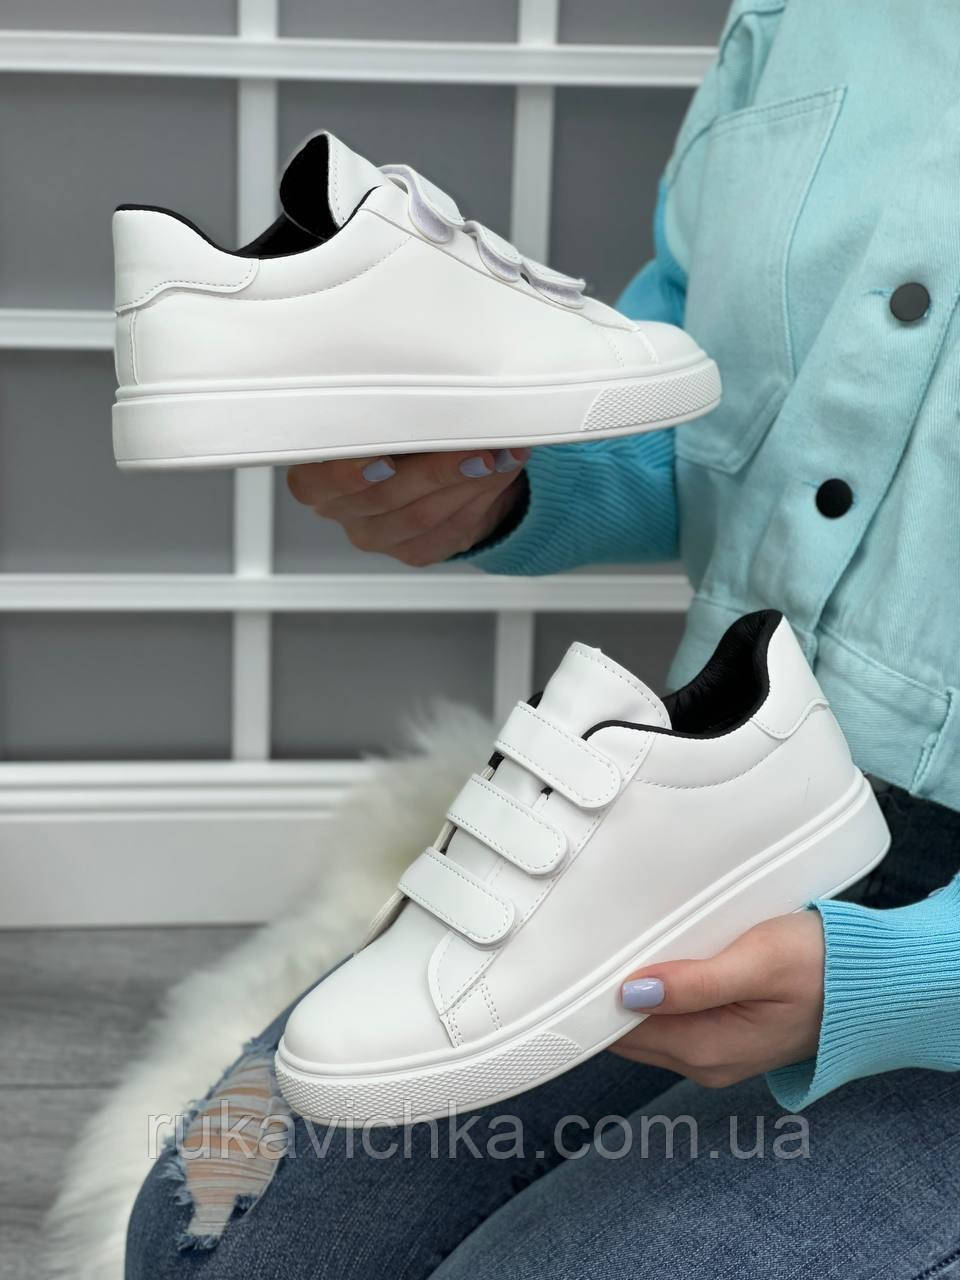 Нові модельки! Стильні кеди-кросівки білого кольору (р 36-41)